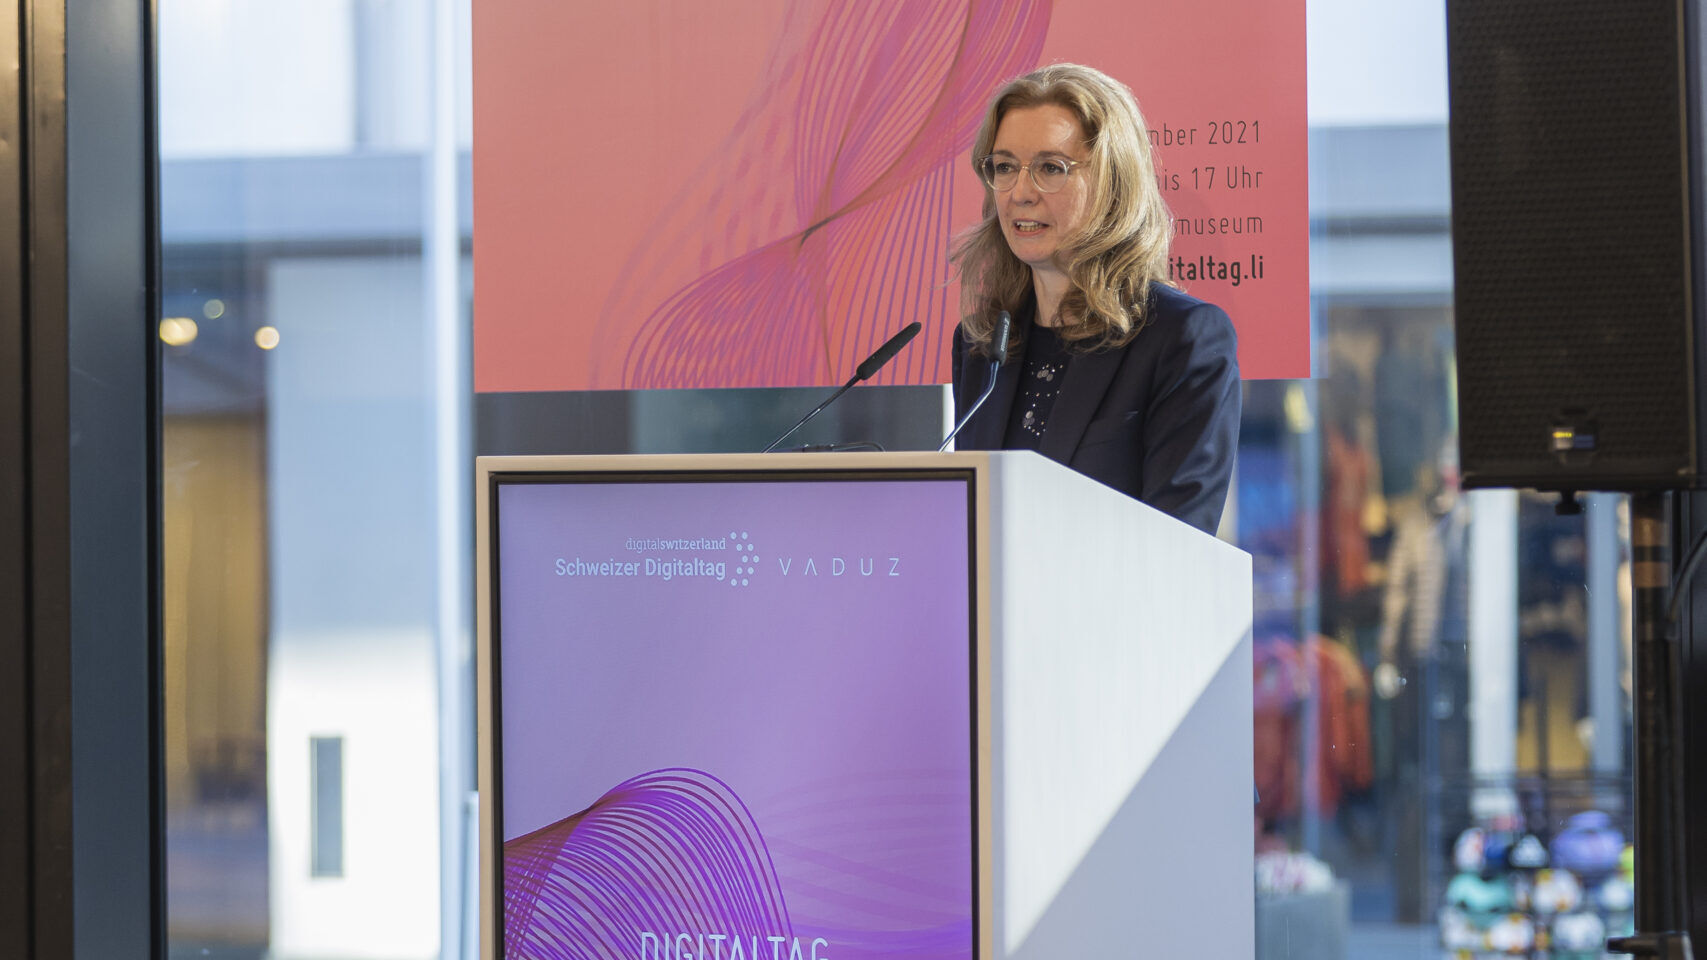 La “Digitaltag Vaduz”, accolta dal Kunstmuseum della capitale del Principato del Liechtenstein sabato 6 novembre 2021, ha suscitato l’entusiasmo di pubblico e relatori in analogia con la “Giornata Digitale Svizzera” del successivo giorno 10: l'intervento della Vice Primo Ministro Sabine Mounani